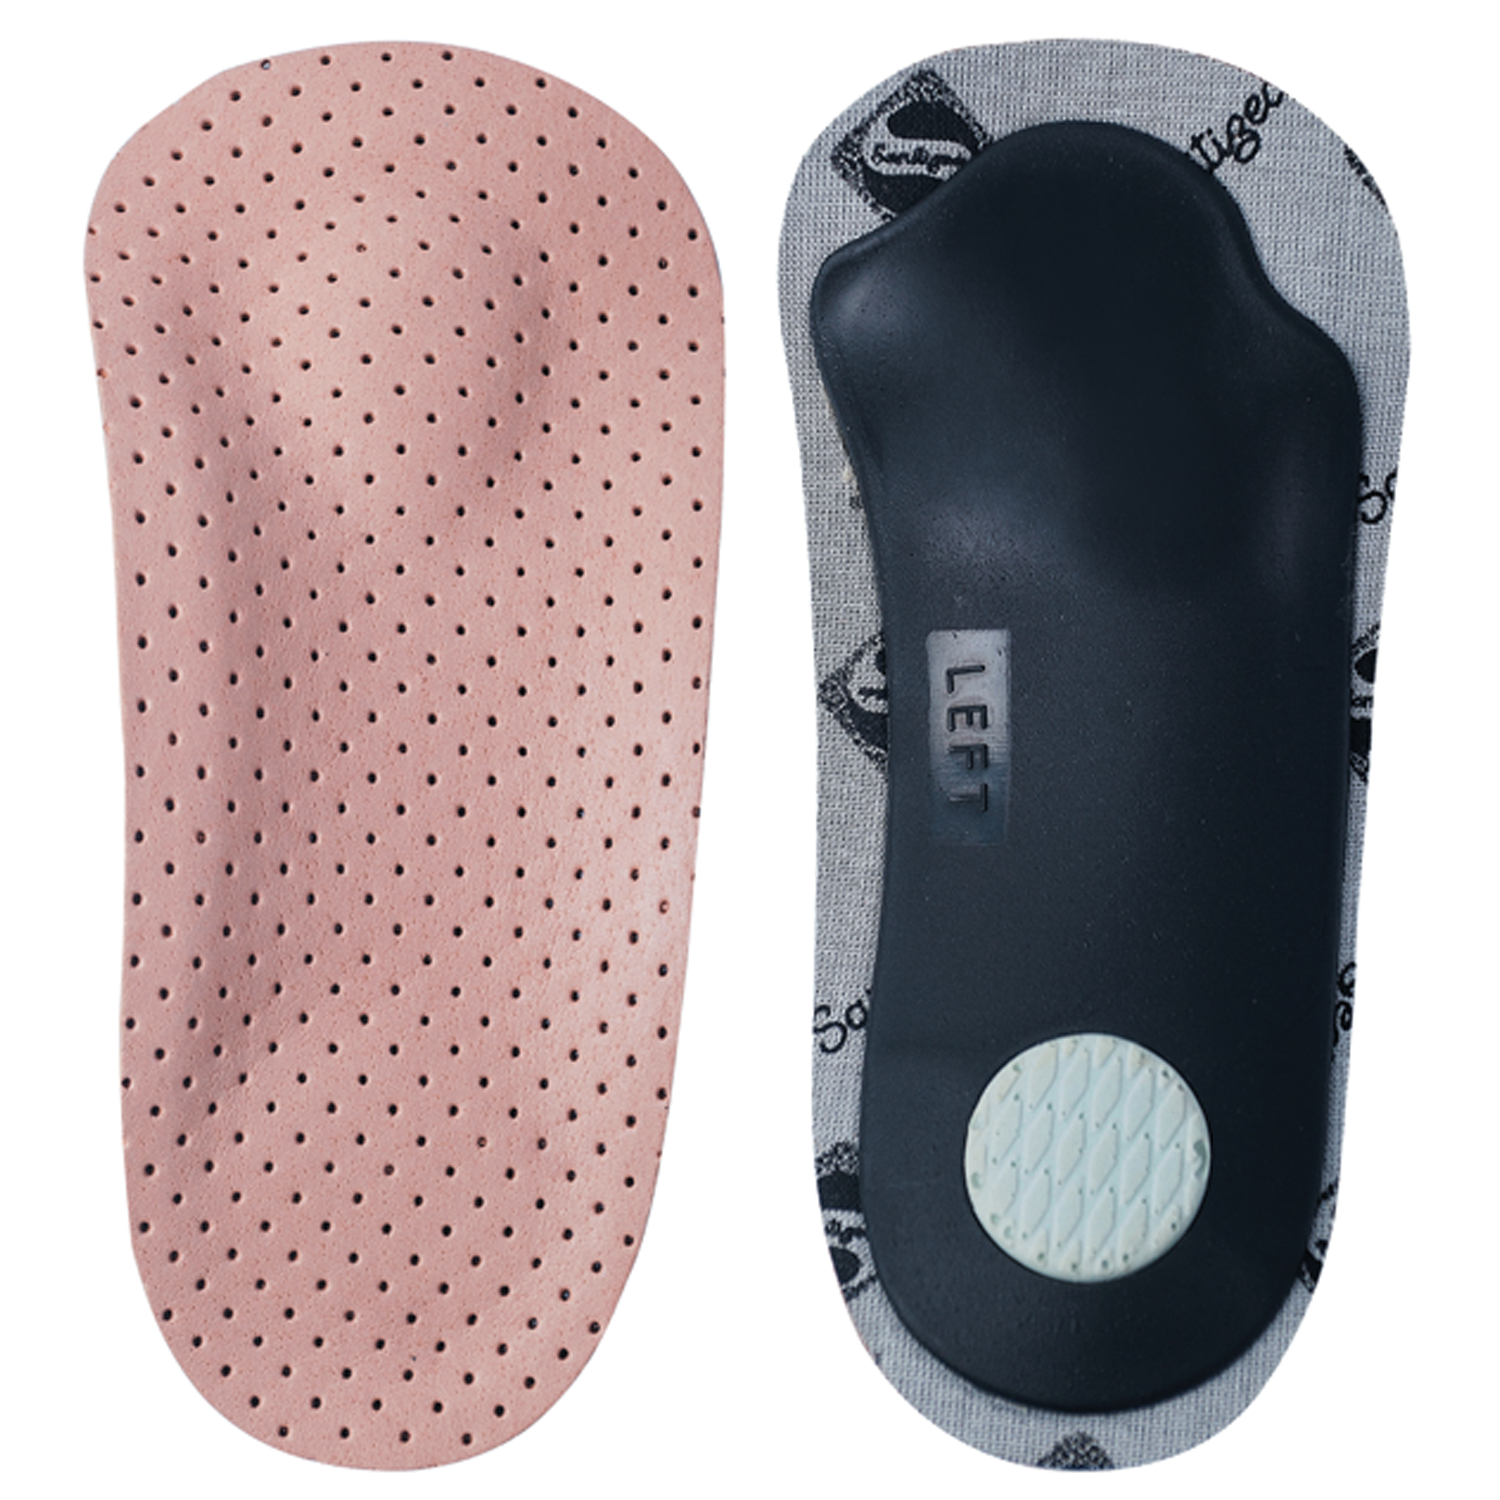 Кожаные супинаторы - полустельки ортопедические для поддержки продольного и поперечного сводов стопы FootCare,ШНС-001